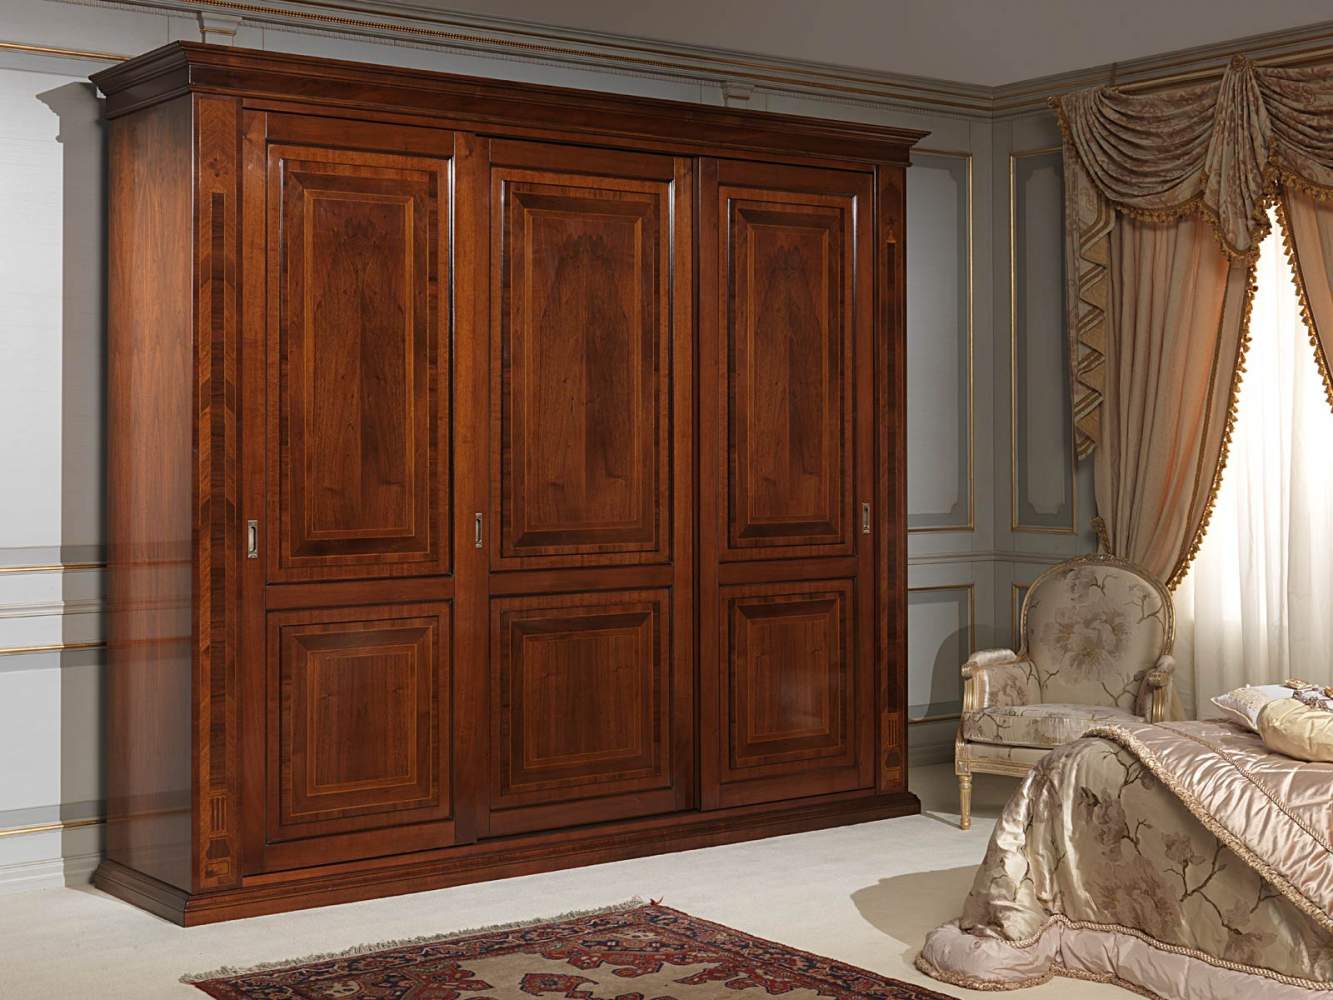 Chambre à coucher XIXe siècle français, armoire trois portes avec marqueteries